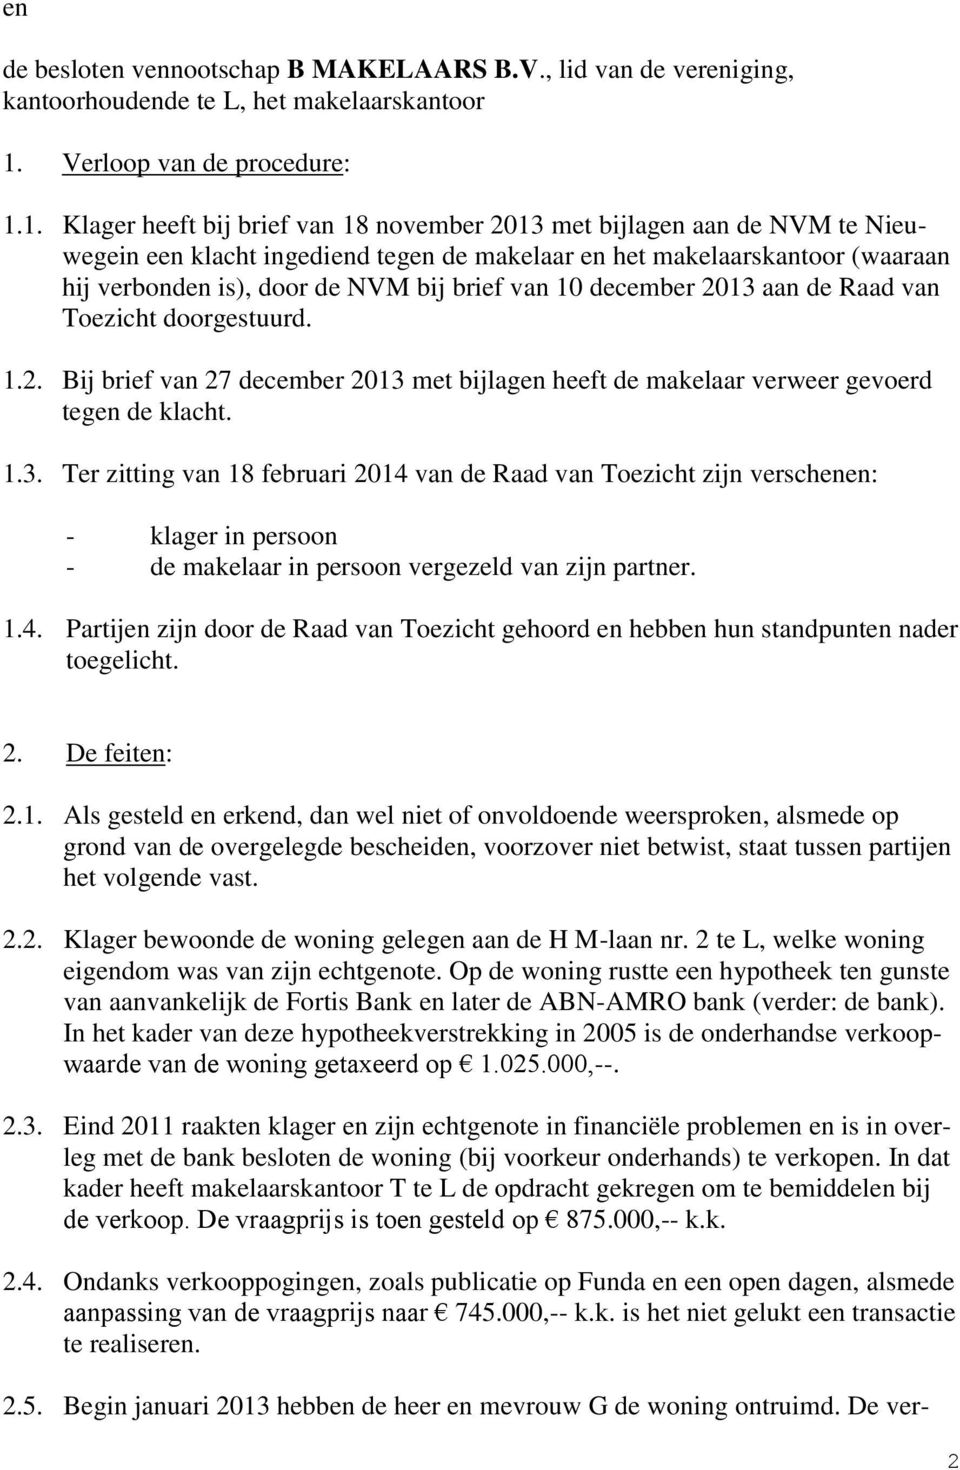 1. Klager heeft bij brief van 18 november 2013 met bijlagen aan de NVM te Nieuwegein een klacht ingediend tegen de makelaar en het makelaarskantoor (waaraan hij verbonden is), door de NVM bij brief